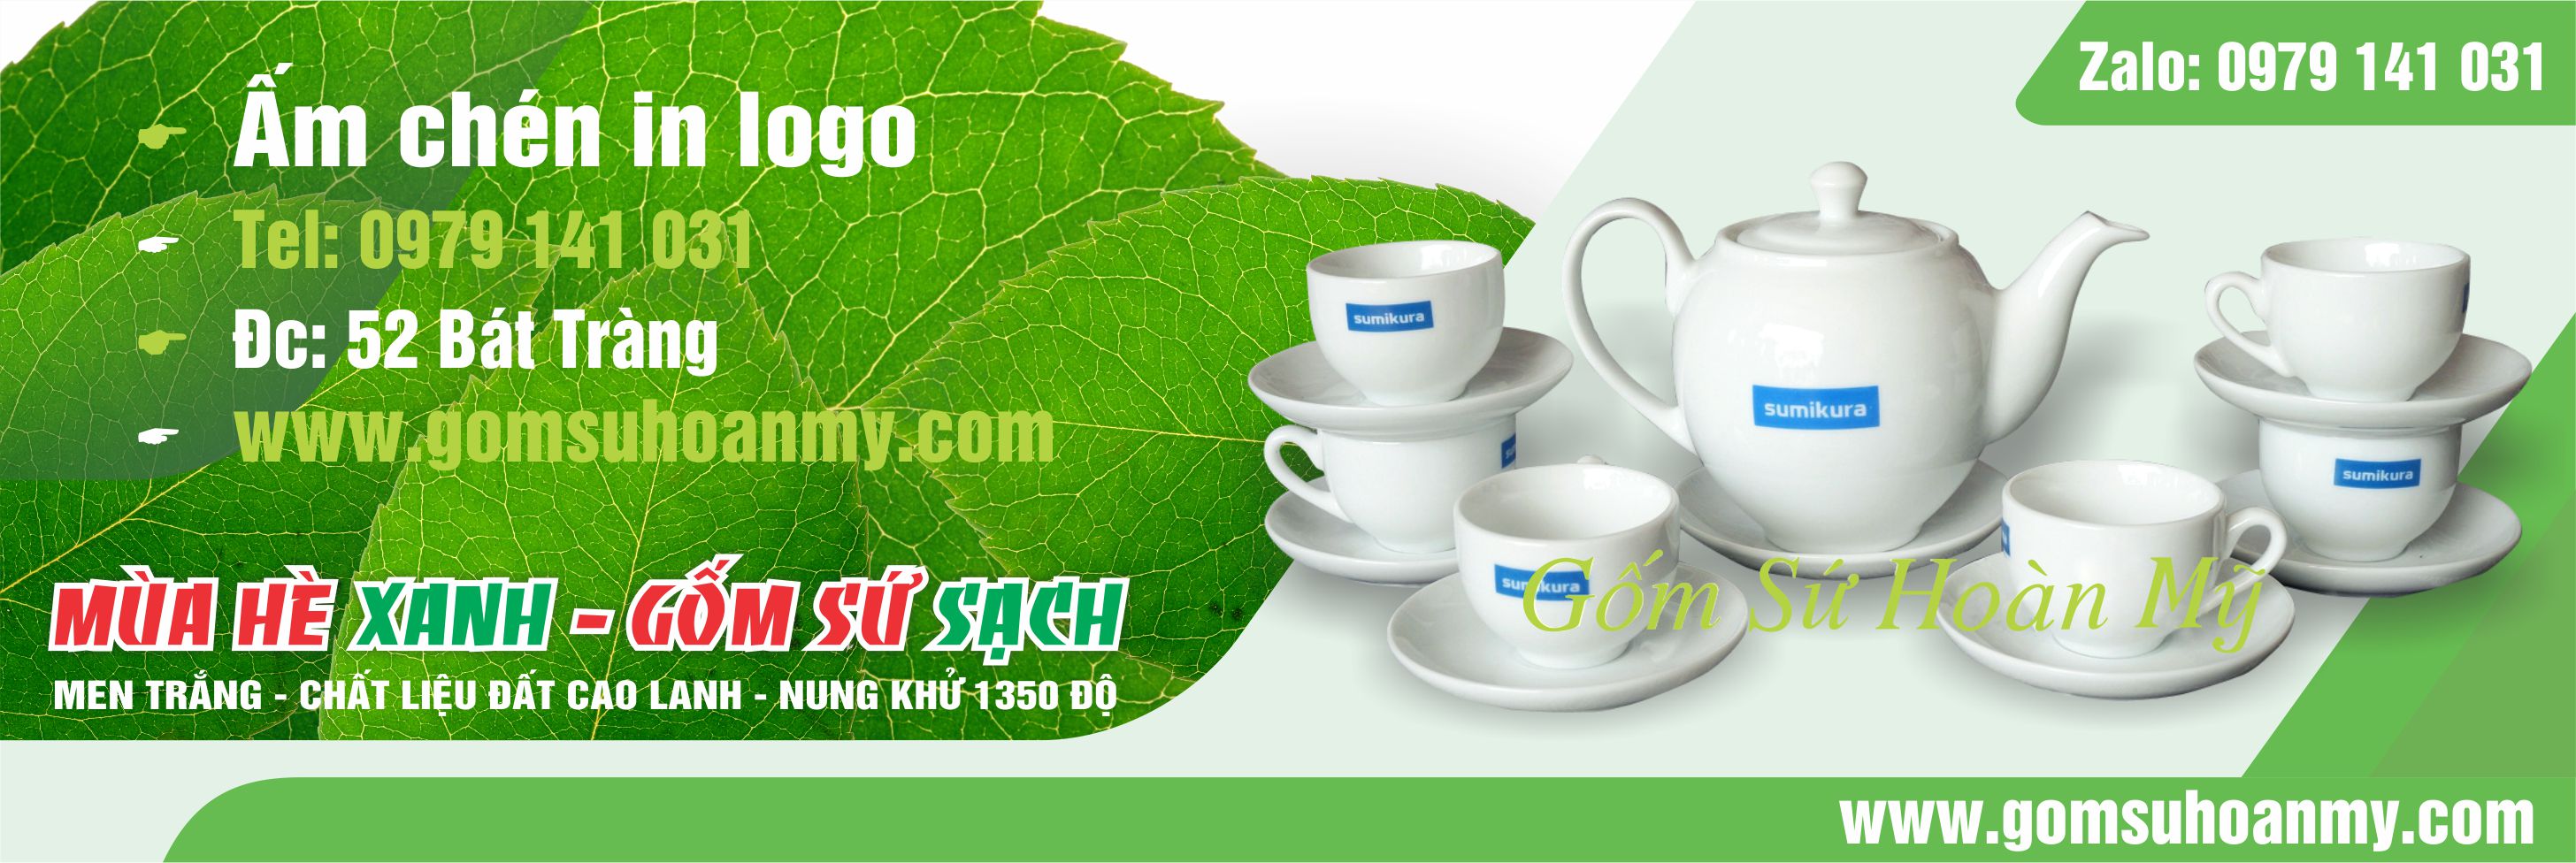 Bộ ấm chén trà Bát tràng in logo quà tặng bán chạy nhất 2024 - 2025